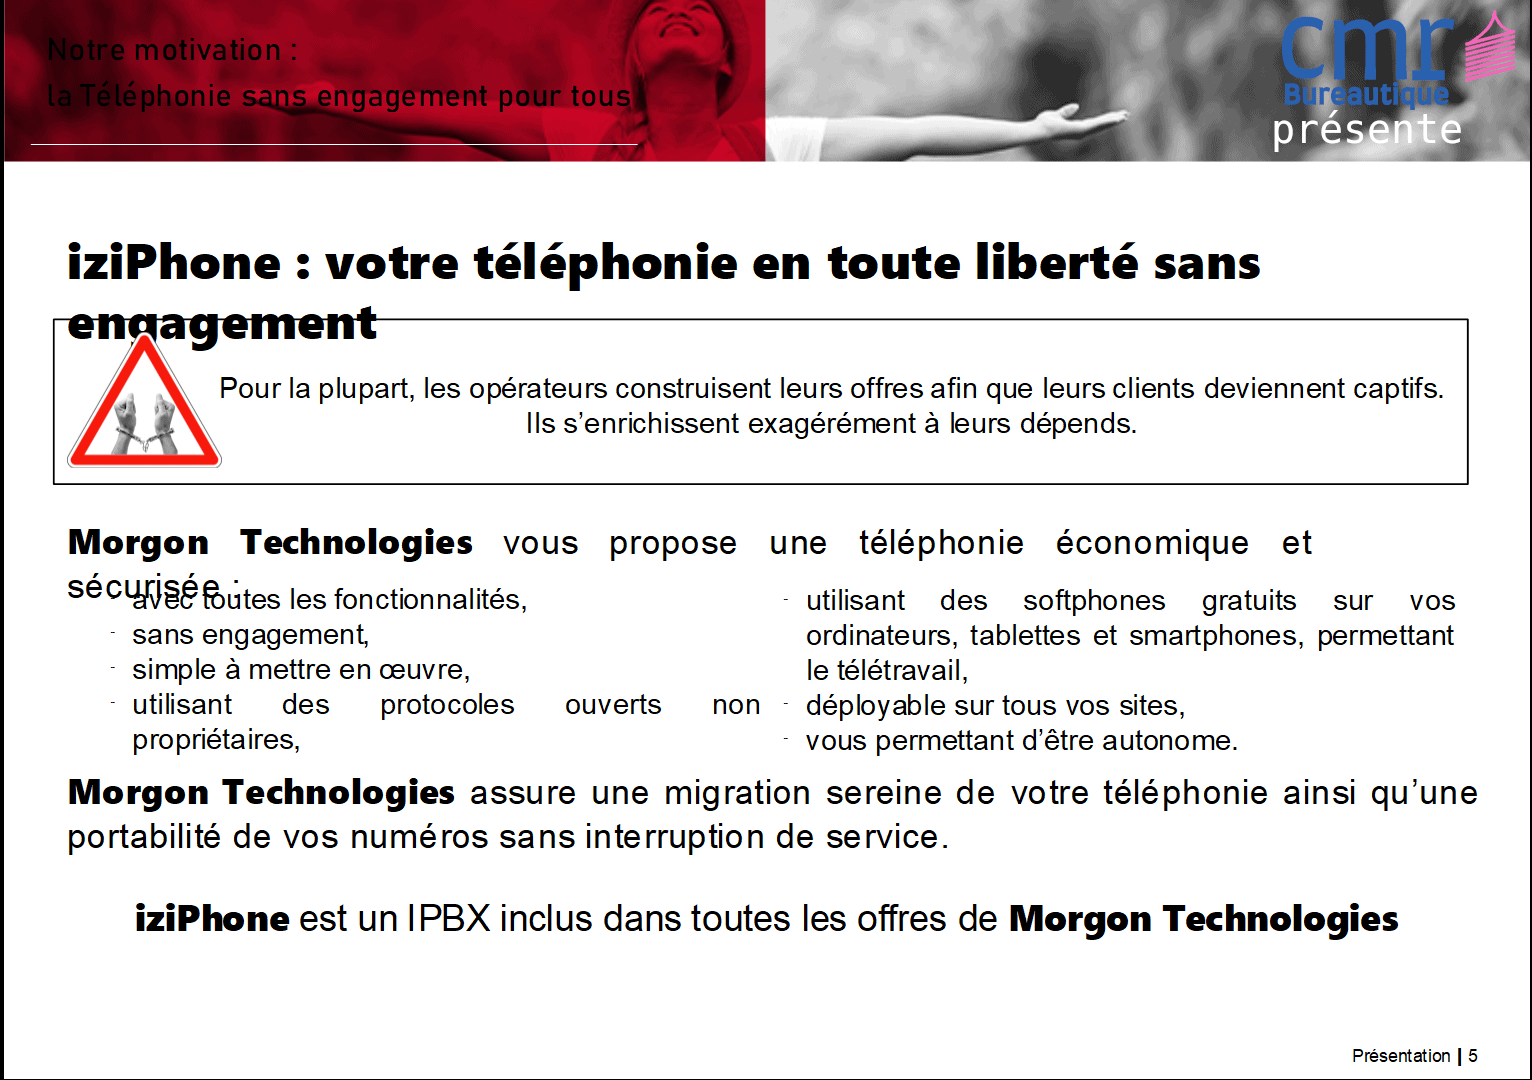 CMR Bureautique, Isère, Savoie, présente IziPhone, LaBrique.